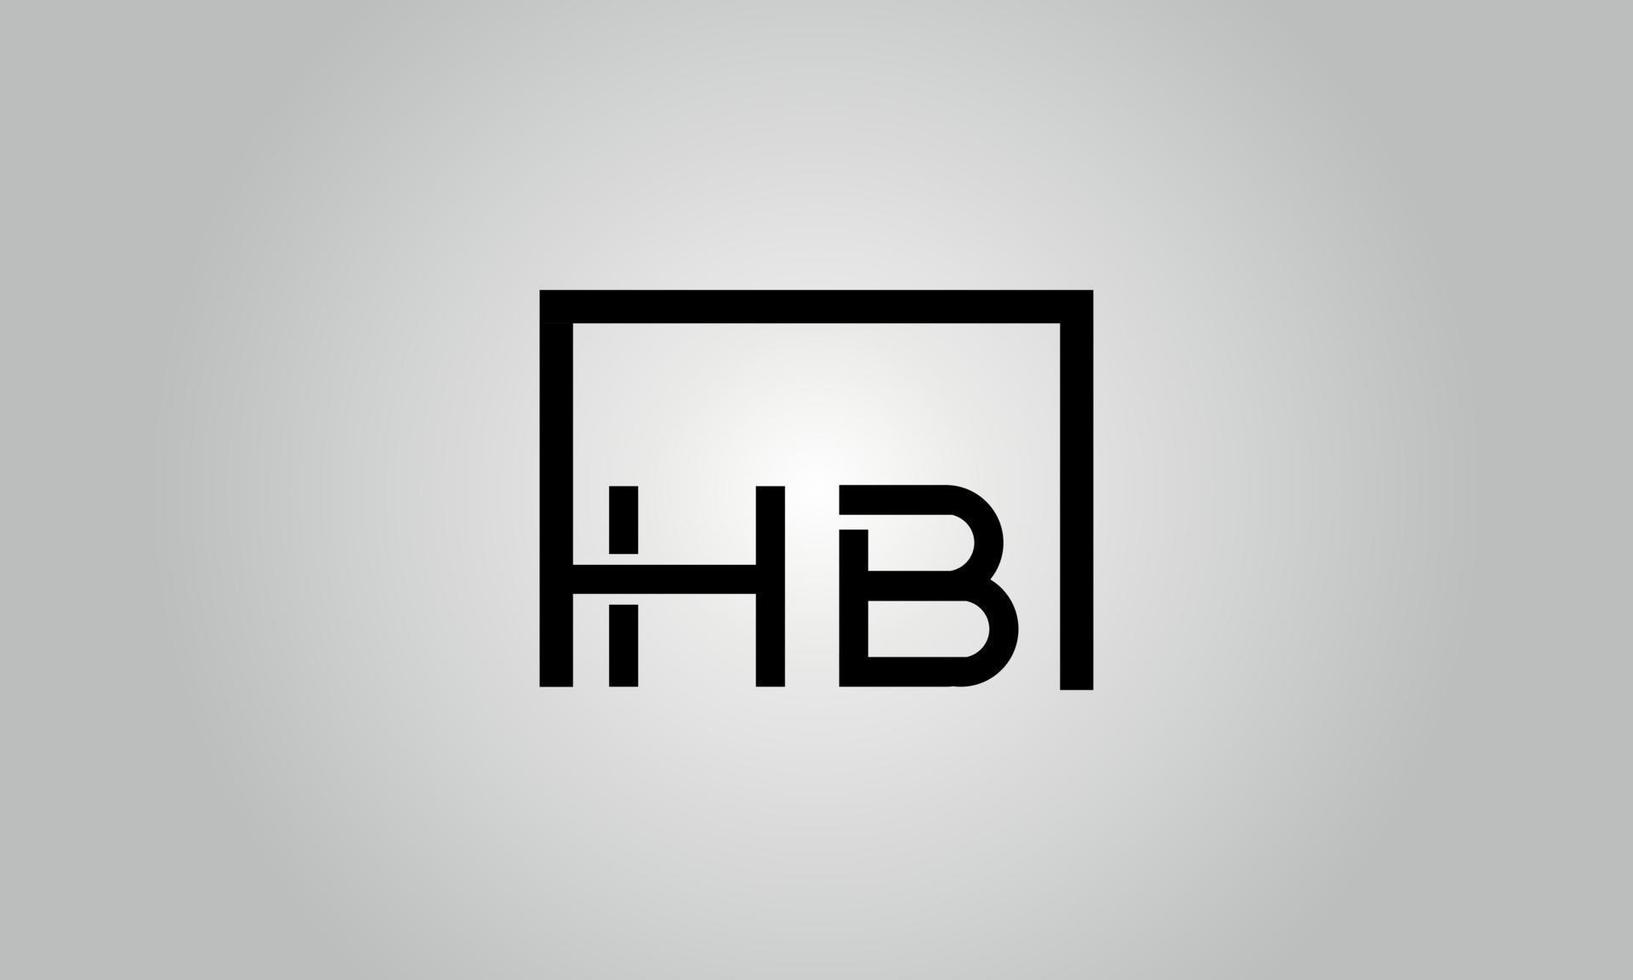 brief hb logo ontwerp. hb logo met plein vorm in zwart kleuren vector vrij vector sjabloon.